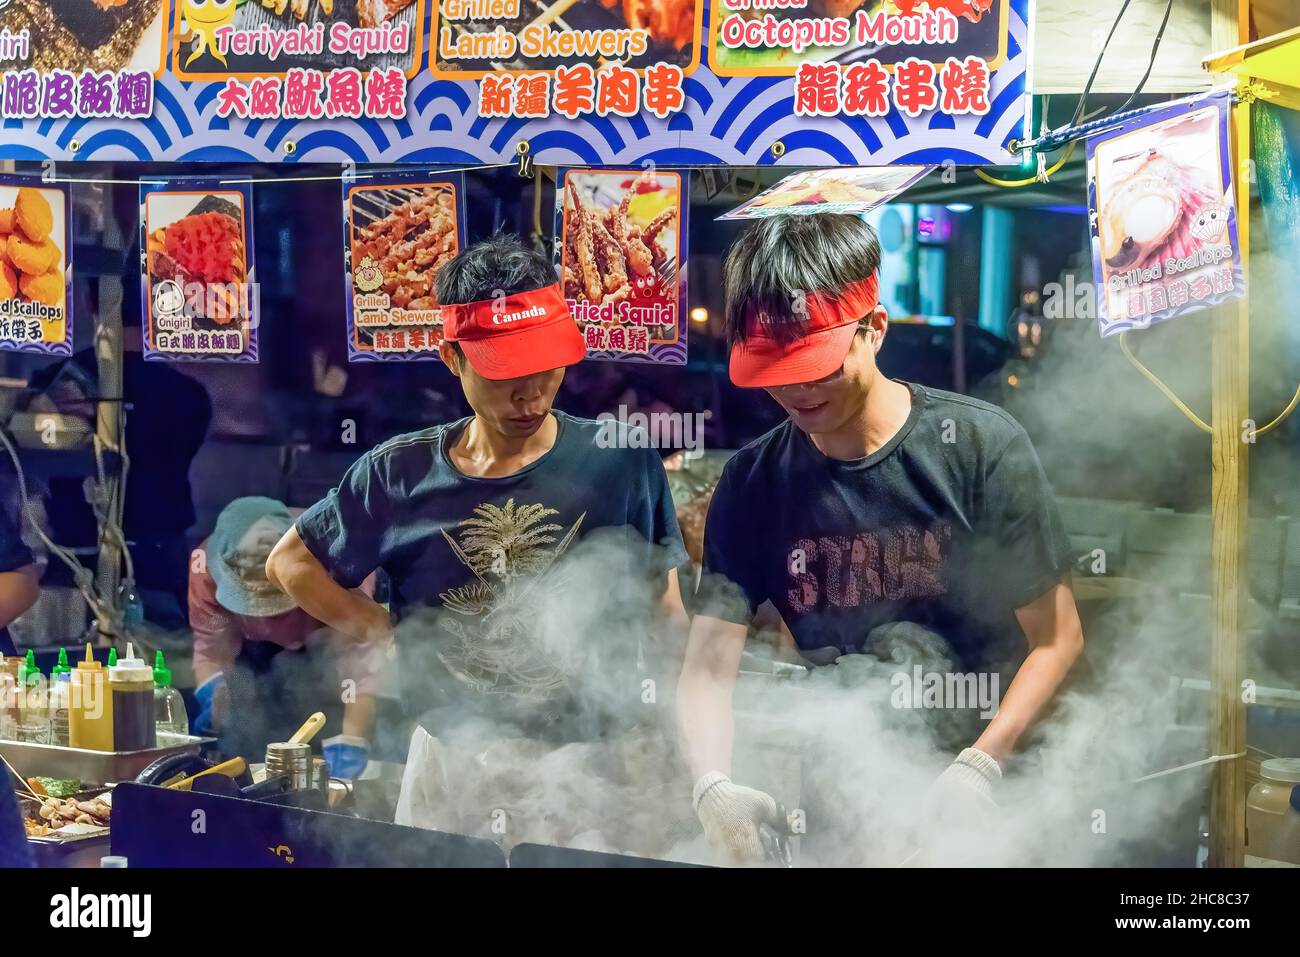 Toronto, Canada-le 4 juillet 2015 : les immigrants asiatiques qui vendent de la nourriture sur un stand de rue pendant le festival Taste of Lawrence Banque D'Images